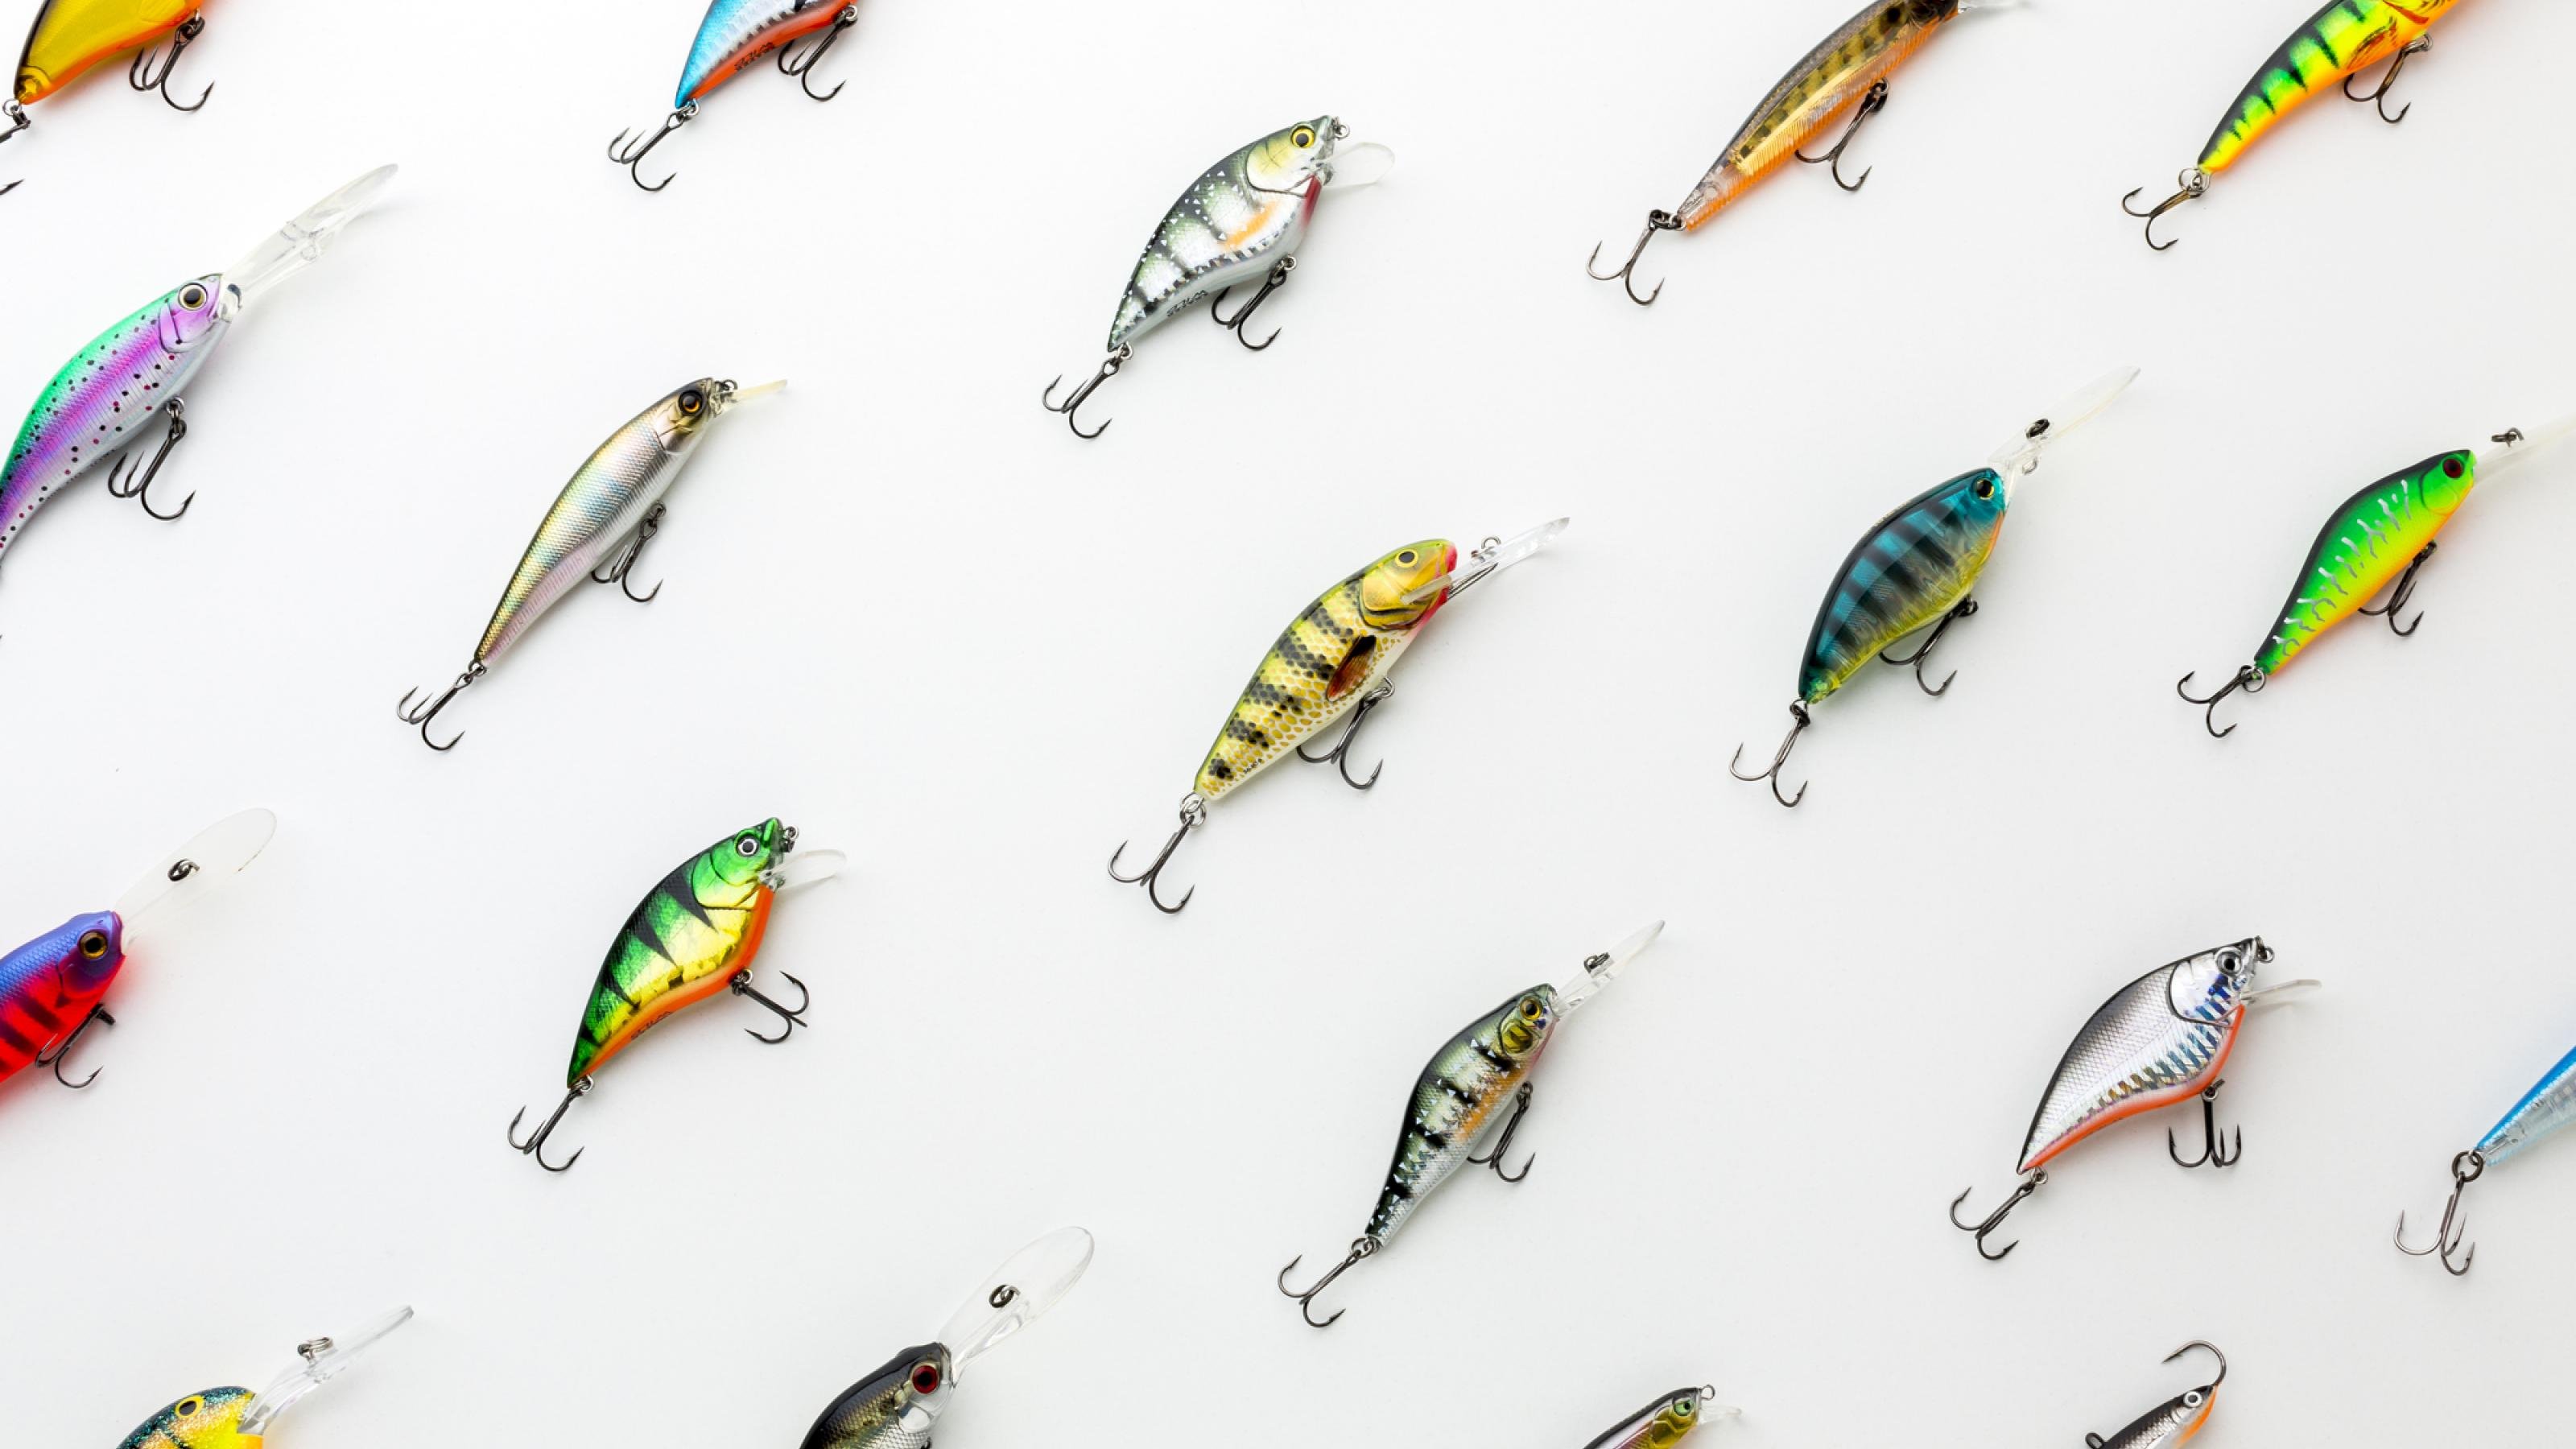 Das Bild zeigt ordentlich angeordnete Fischköder – es sind selbst farbenfrohe kleine Fischlein mit Haken.